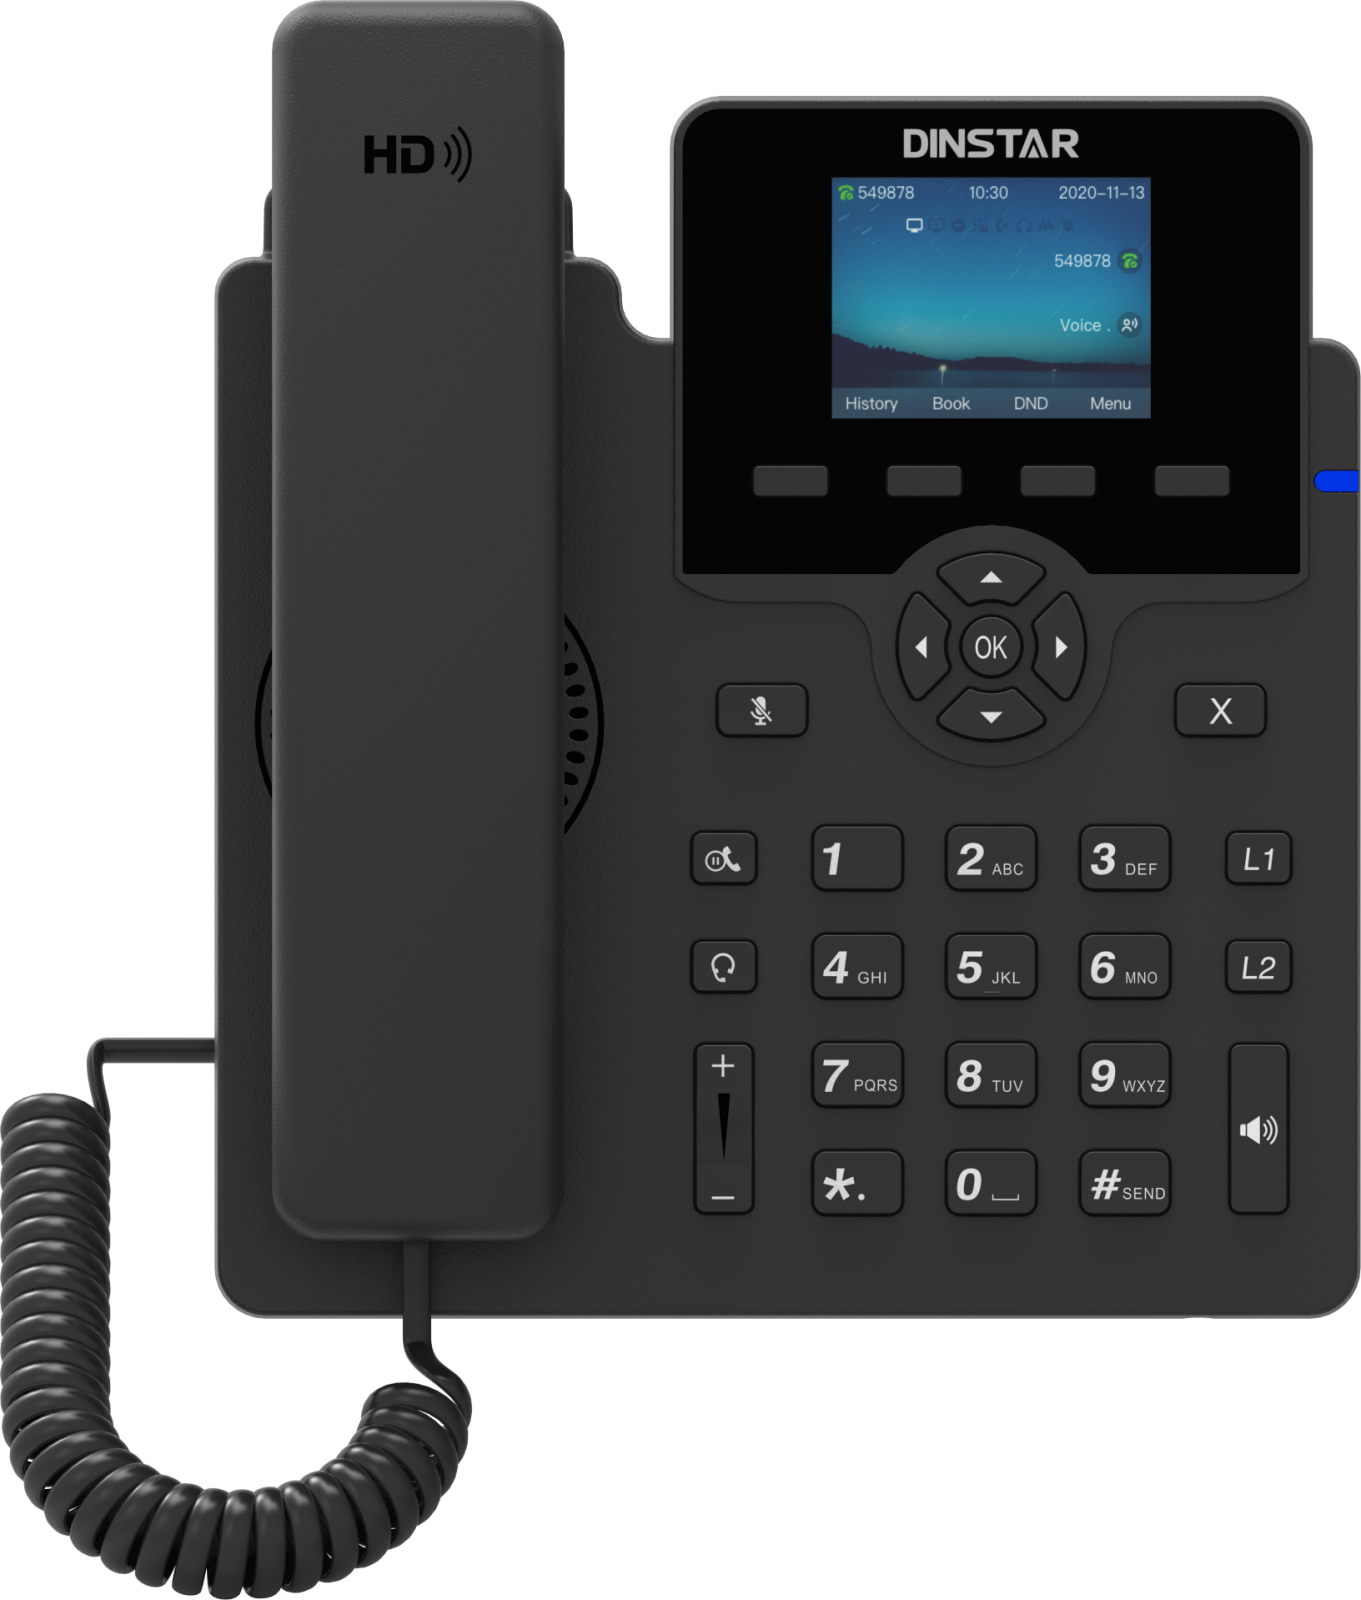 IP-телефон Dinstar C62UP 6 SIP аккаунтов цветной дисплей 24 дюйма конференция на 5 абонентов поддержка EHS и POE.